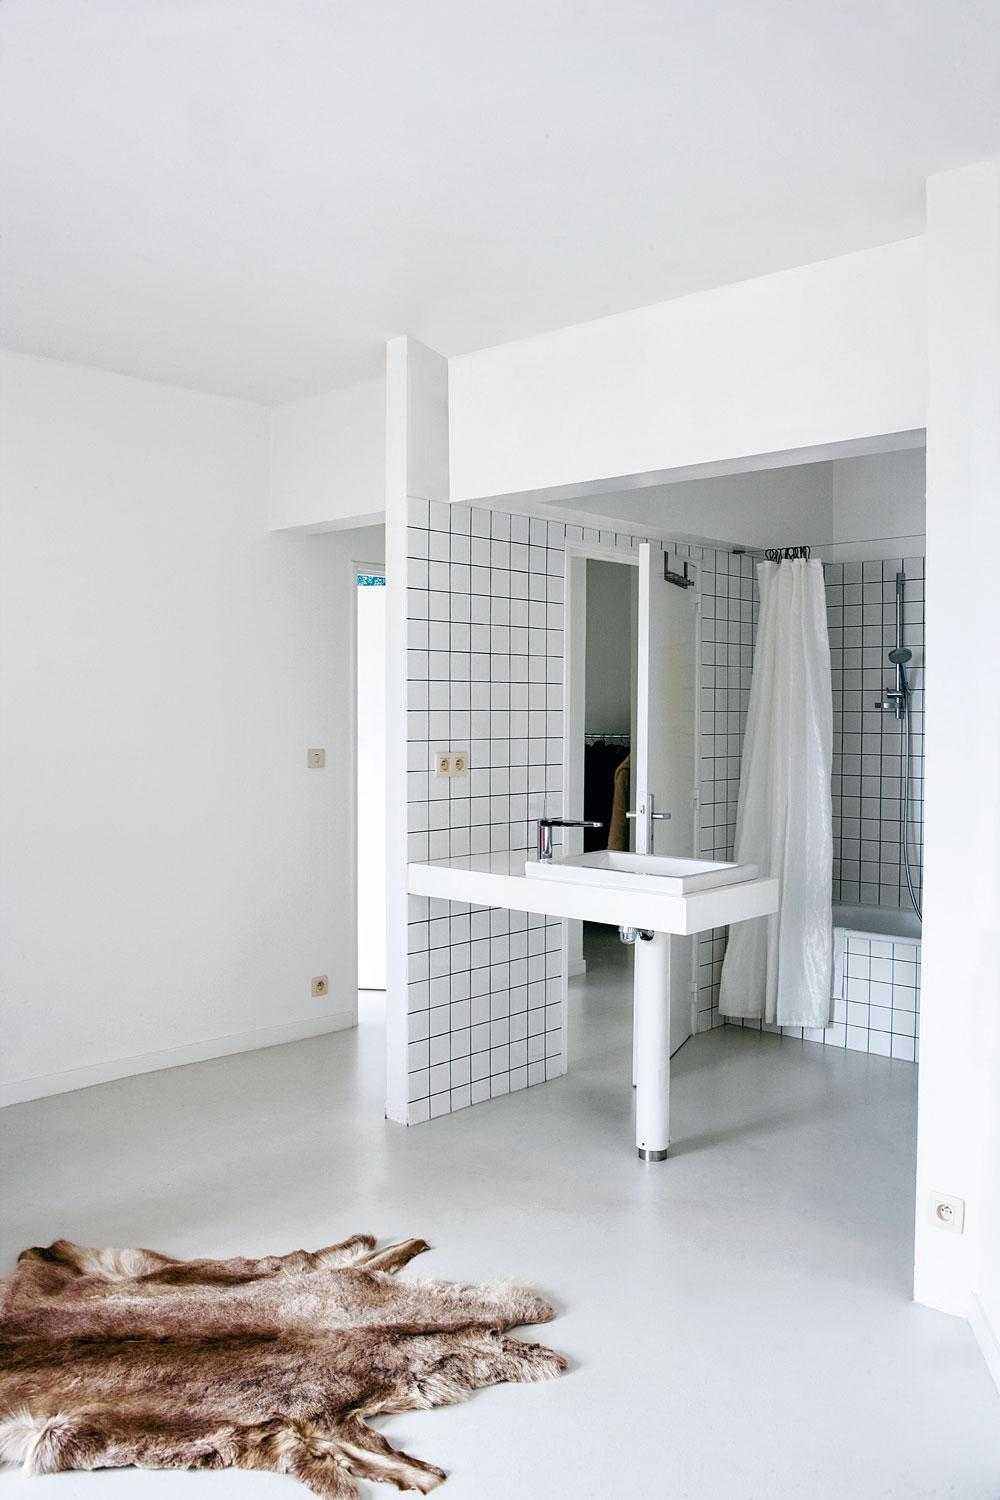 En lien direct avec la chambre, la salle de bains est en carrelage blanc, allusion au travail de l'artiste Jean-Pierre Raynaud.